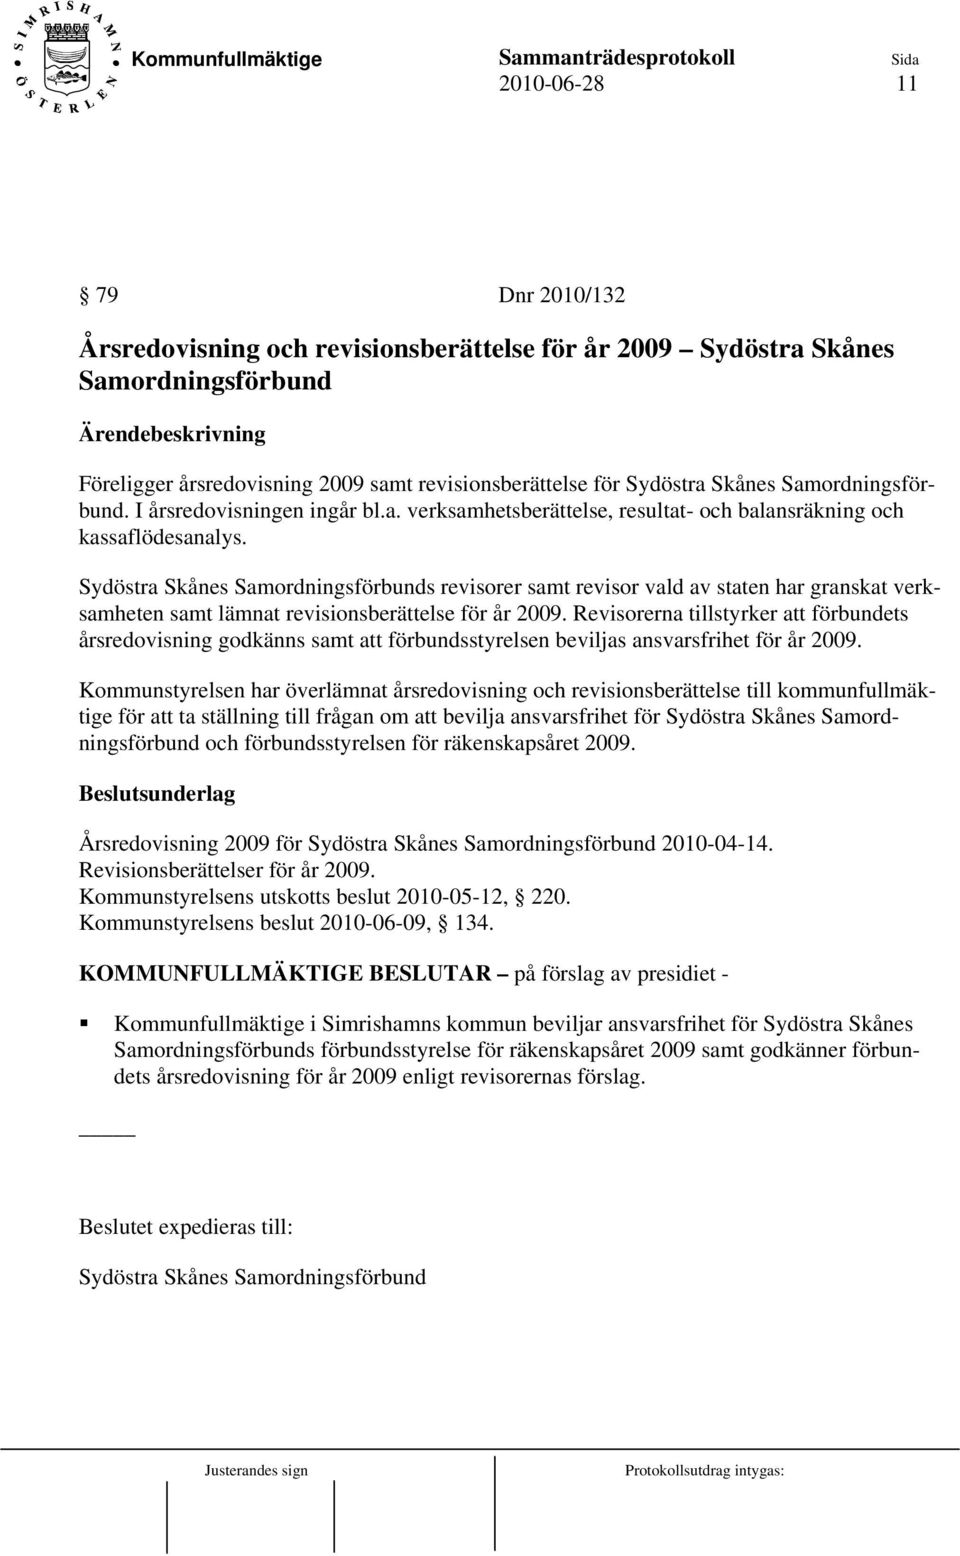 Sydöstra Skånes Samordningsförbunds revisorer samt revisor vald av staten har granskat verksamheten samt lämnat revisionsberättelse för år 2009.